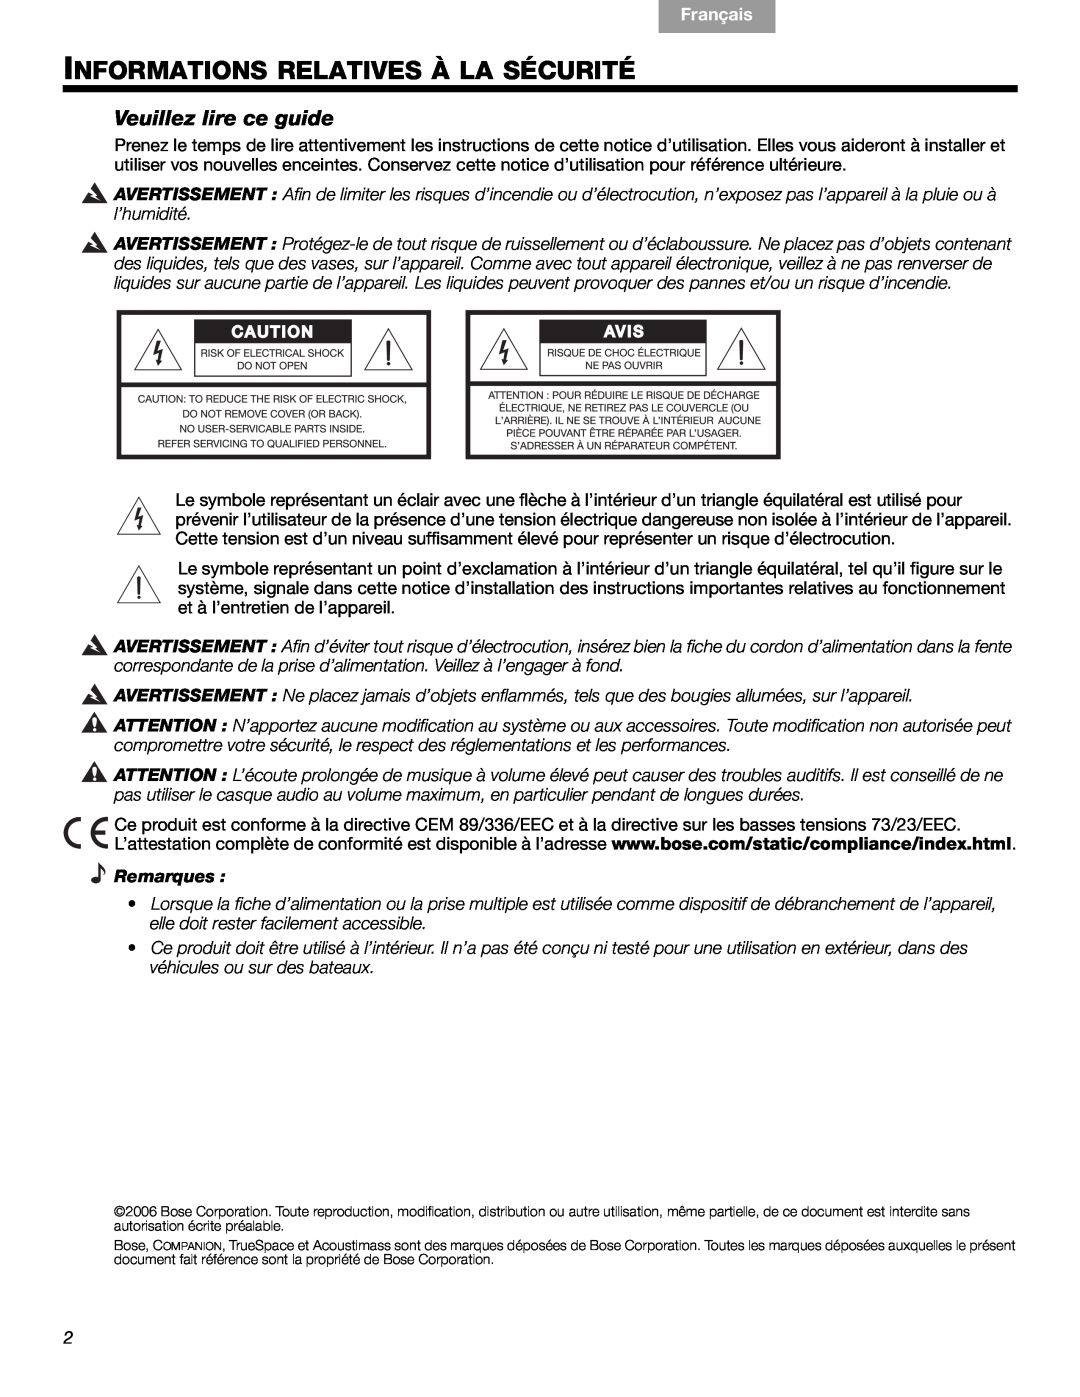 Bose 40326 manual Informations Relatives À La Sécurité, Veuillez lire ce guide, Français, Español English, Remarques 